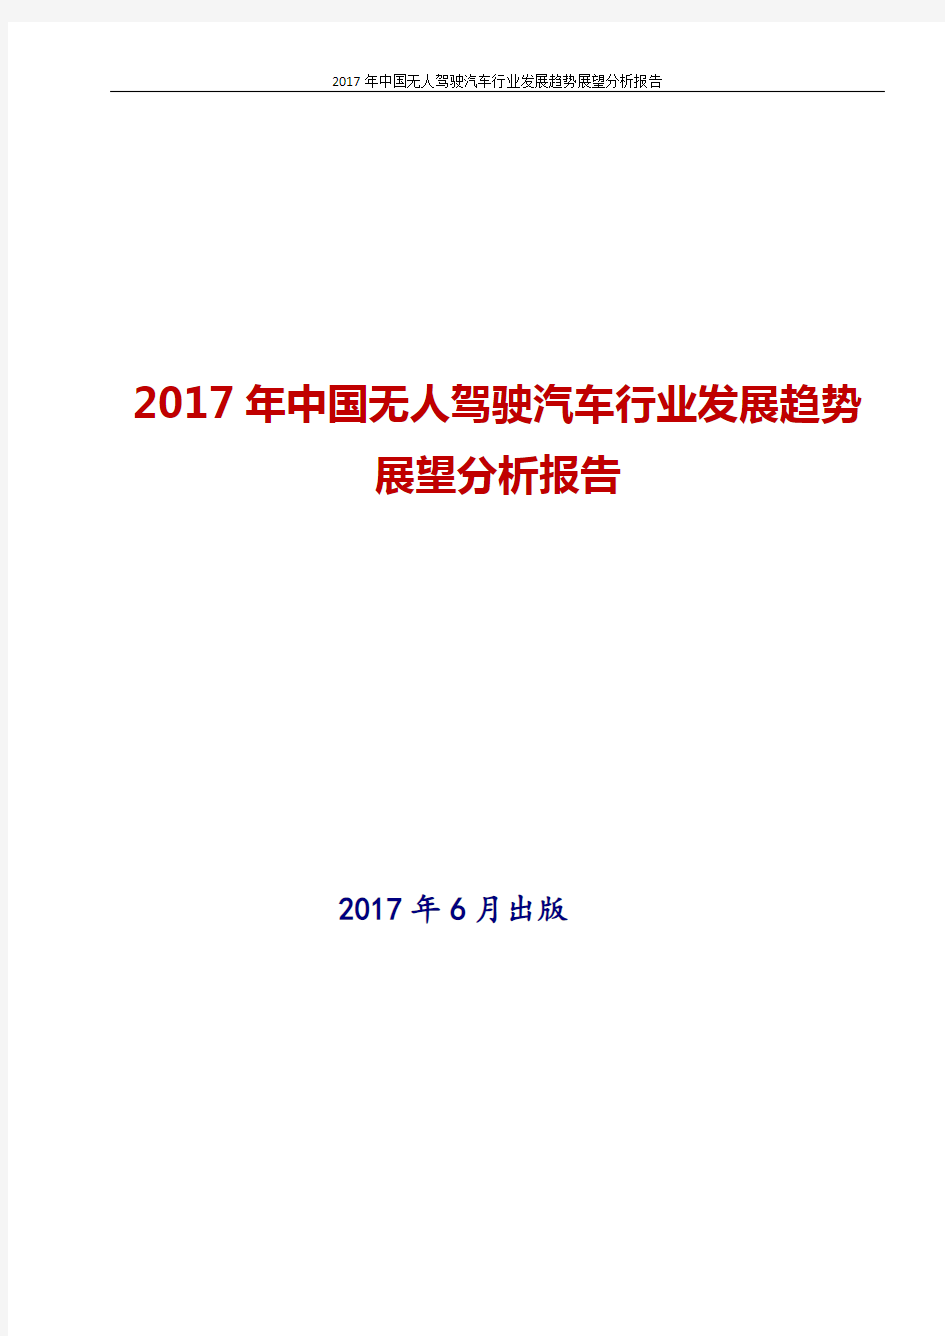 2017年最新版中国中国无人驾驶汽车行业发展趋势展望分析报告